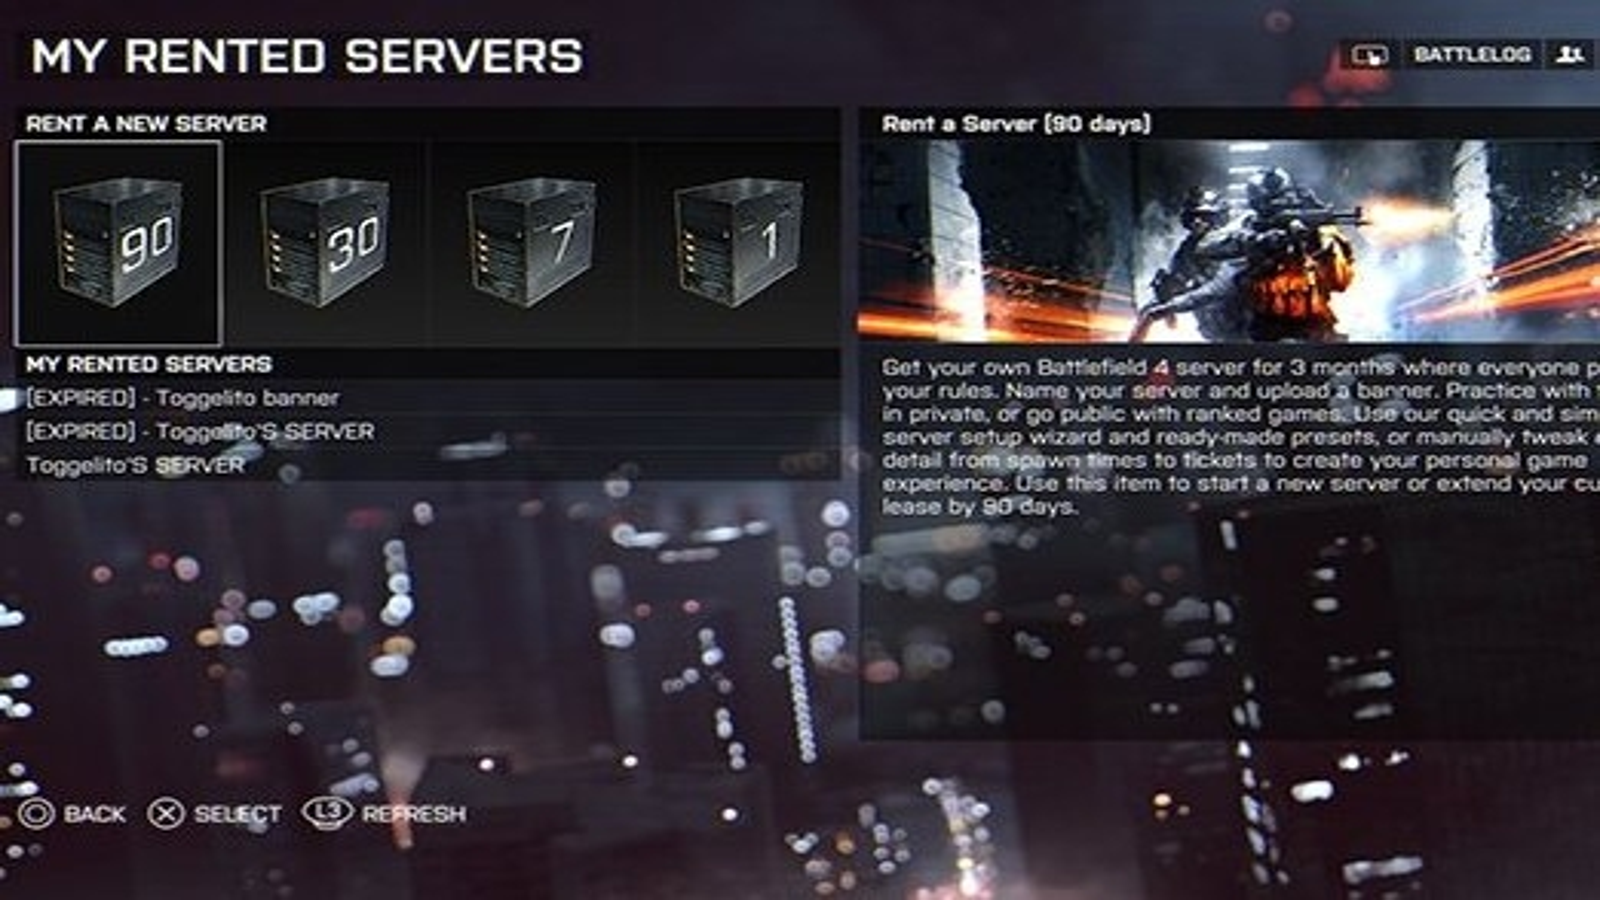 Los requisitos para jugar a 'Battlefield 4' en PC son estos